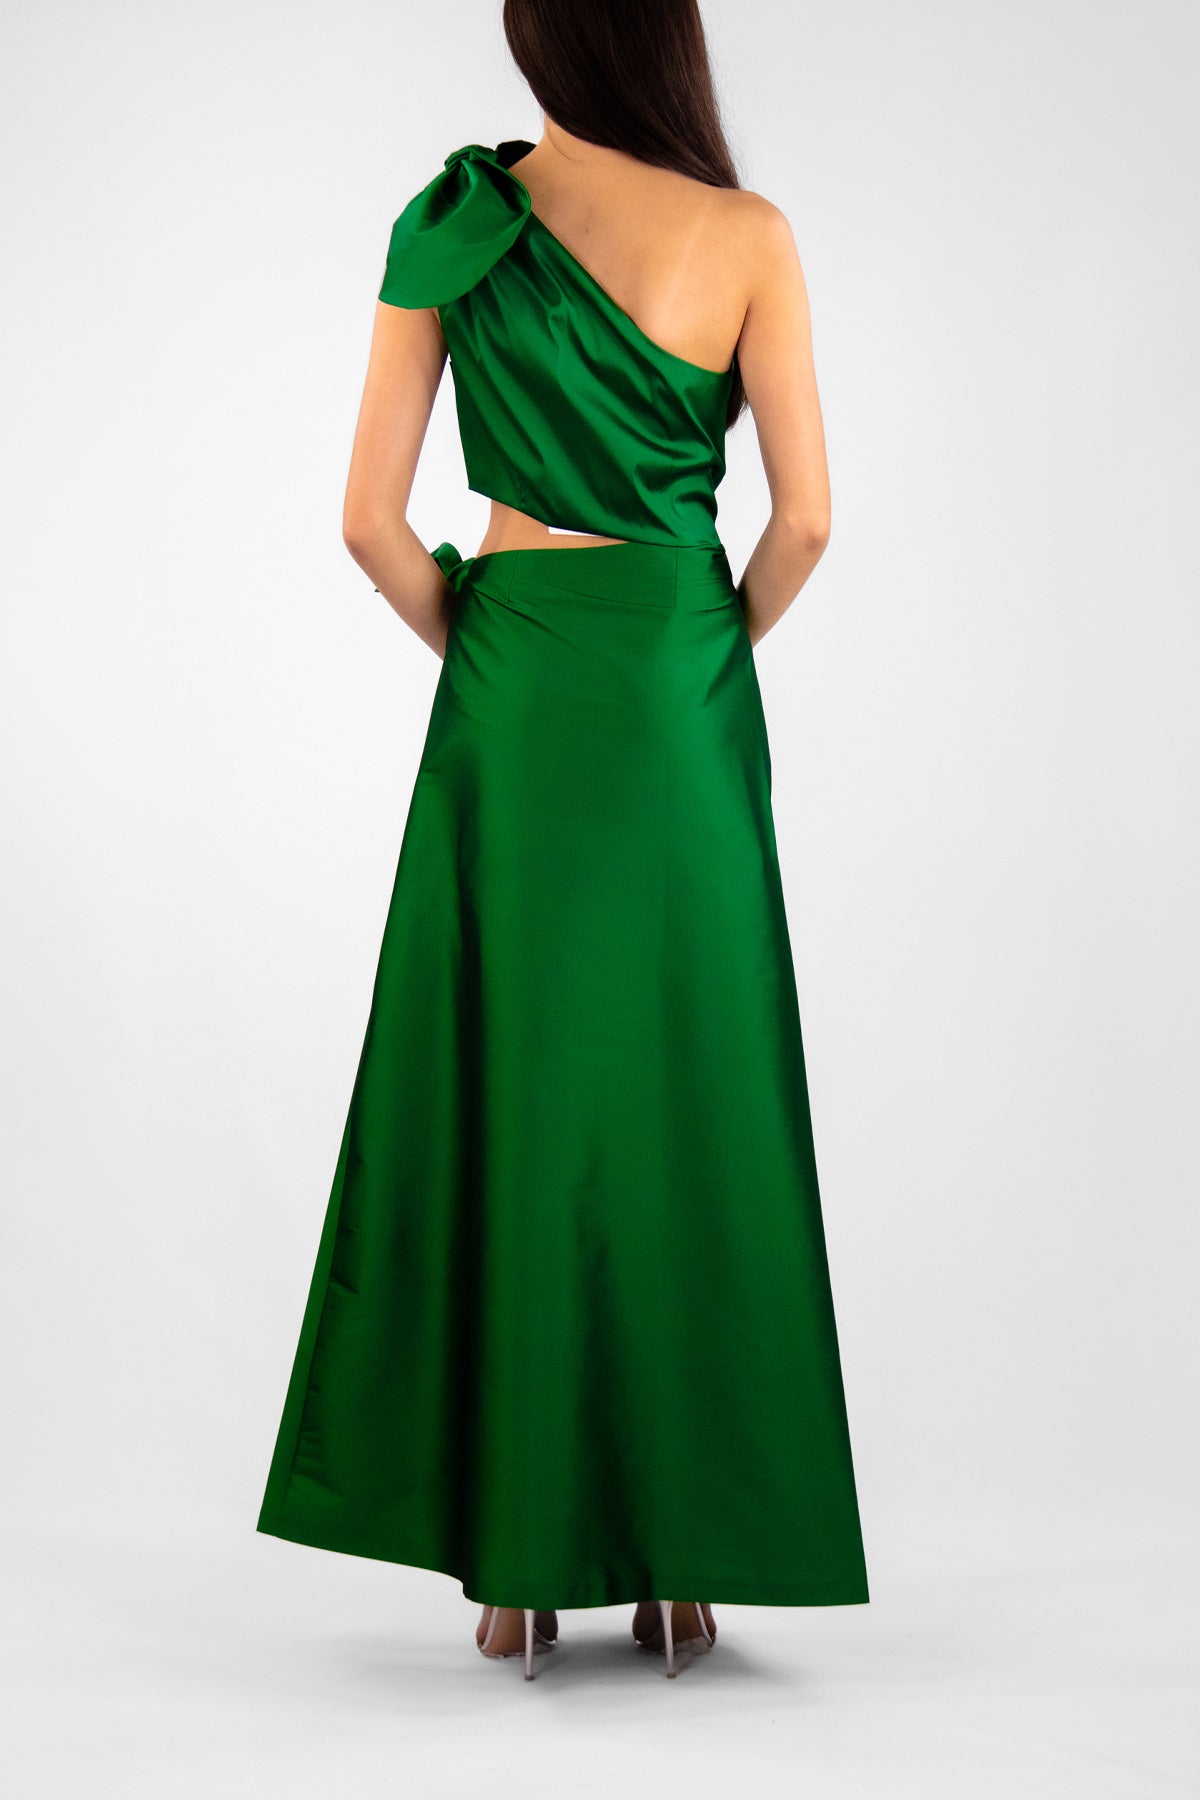 Carlotta Dress in Emerald Green - shop-olivia.com